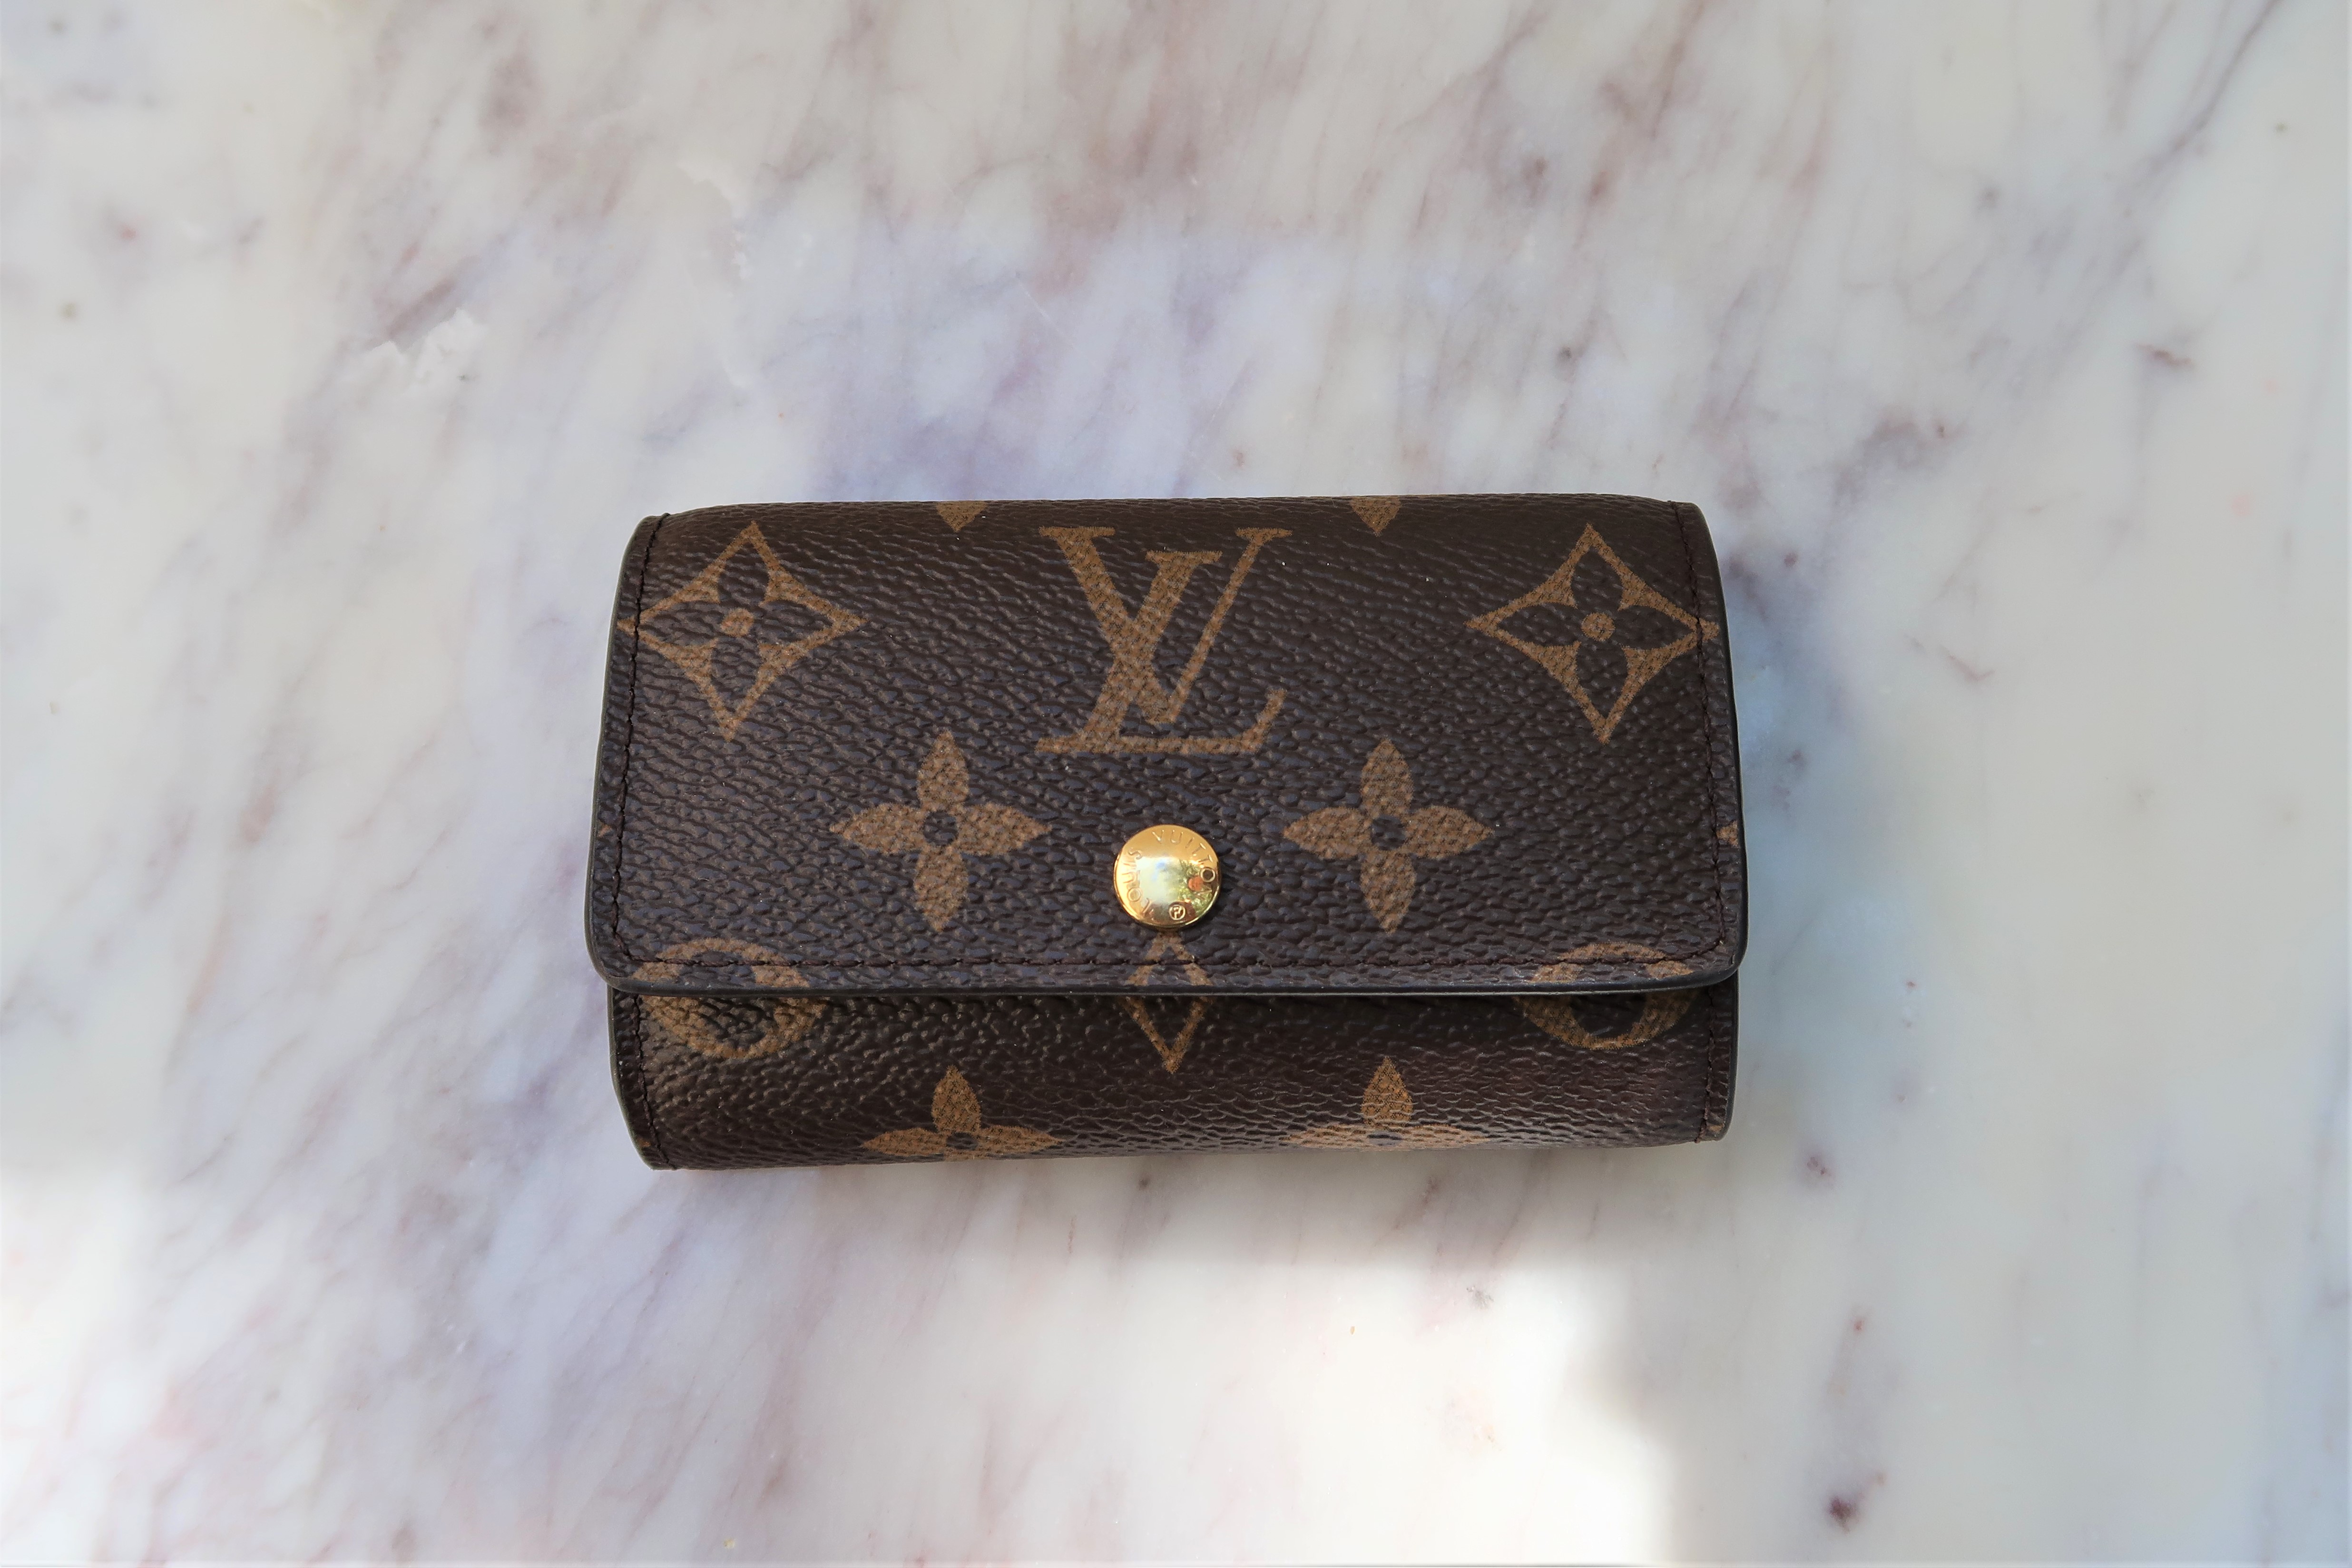 Louis Vuitton Straps & Accessories for Purses, Bags, Wallets, SLGs